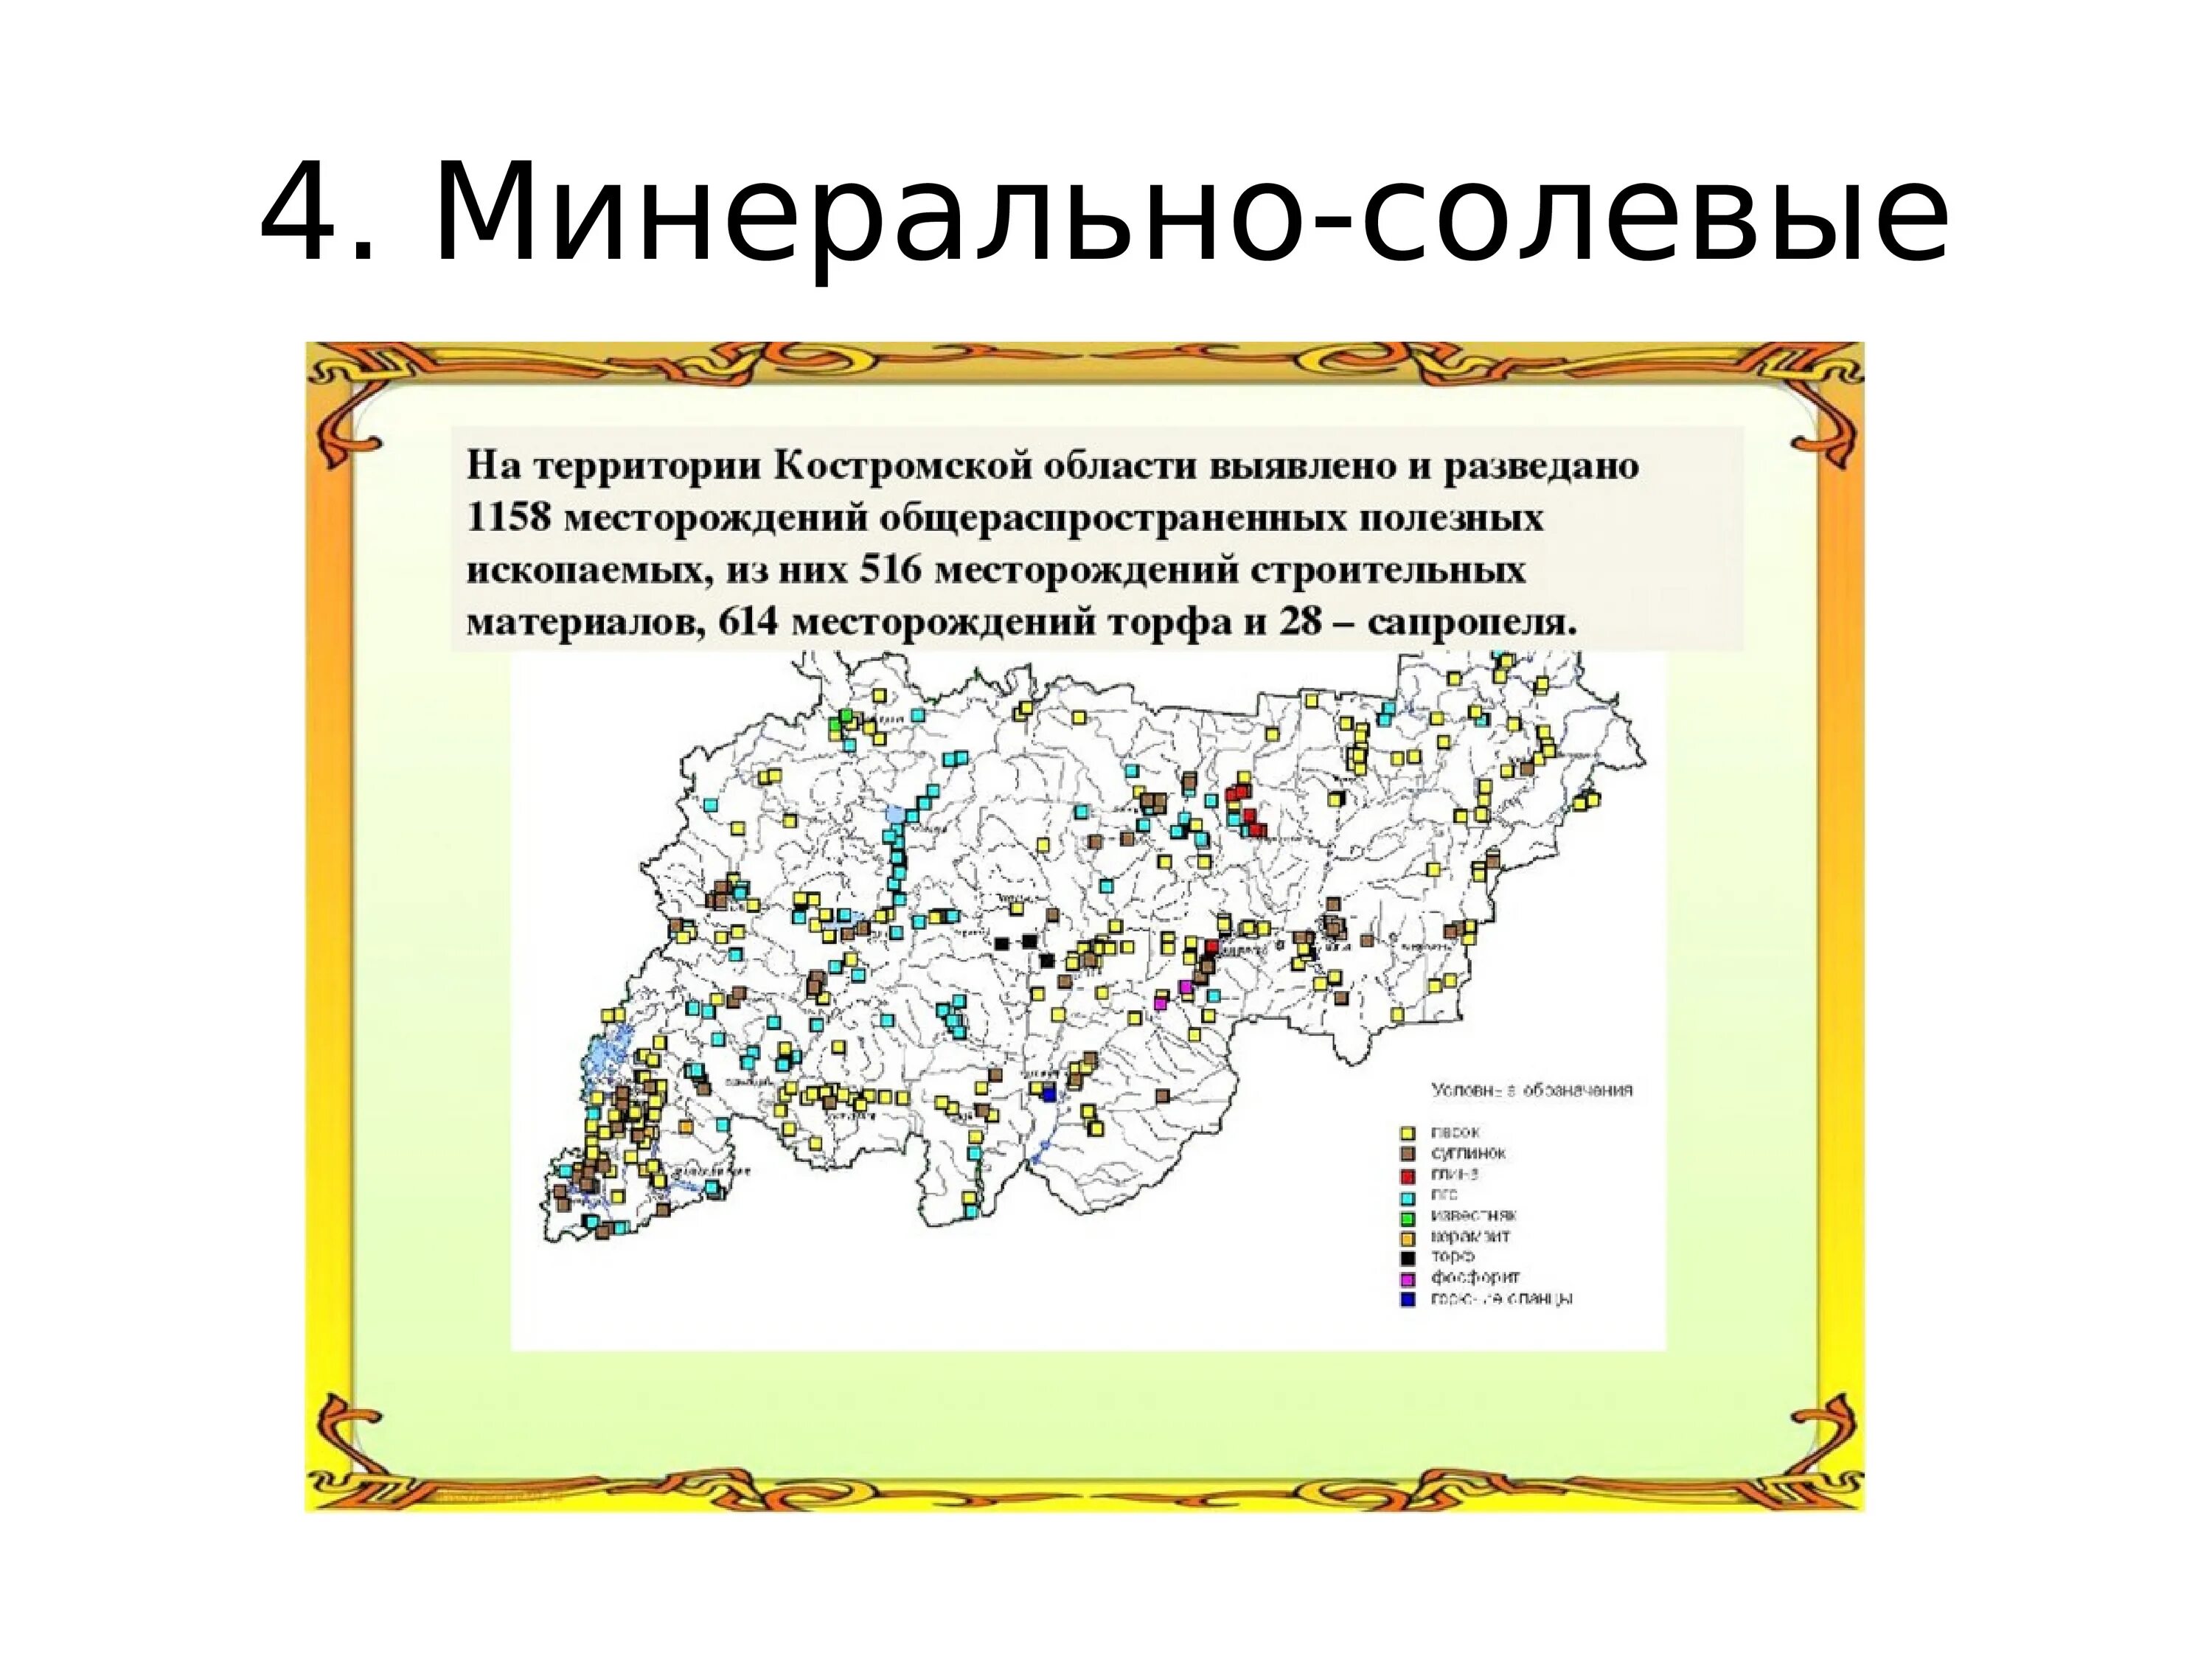 Богатства тверской области. Карта полезных ископаемых Костромской области. Карта природных ископаемых Костромской области. Полезные ископаемые Костромы на карте. Полезные ископаемые Костромской области на карте.